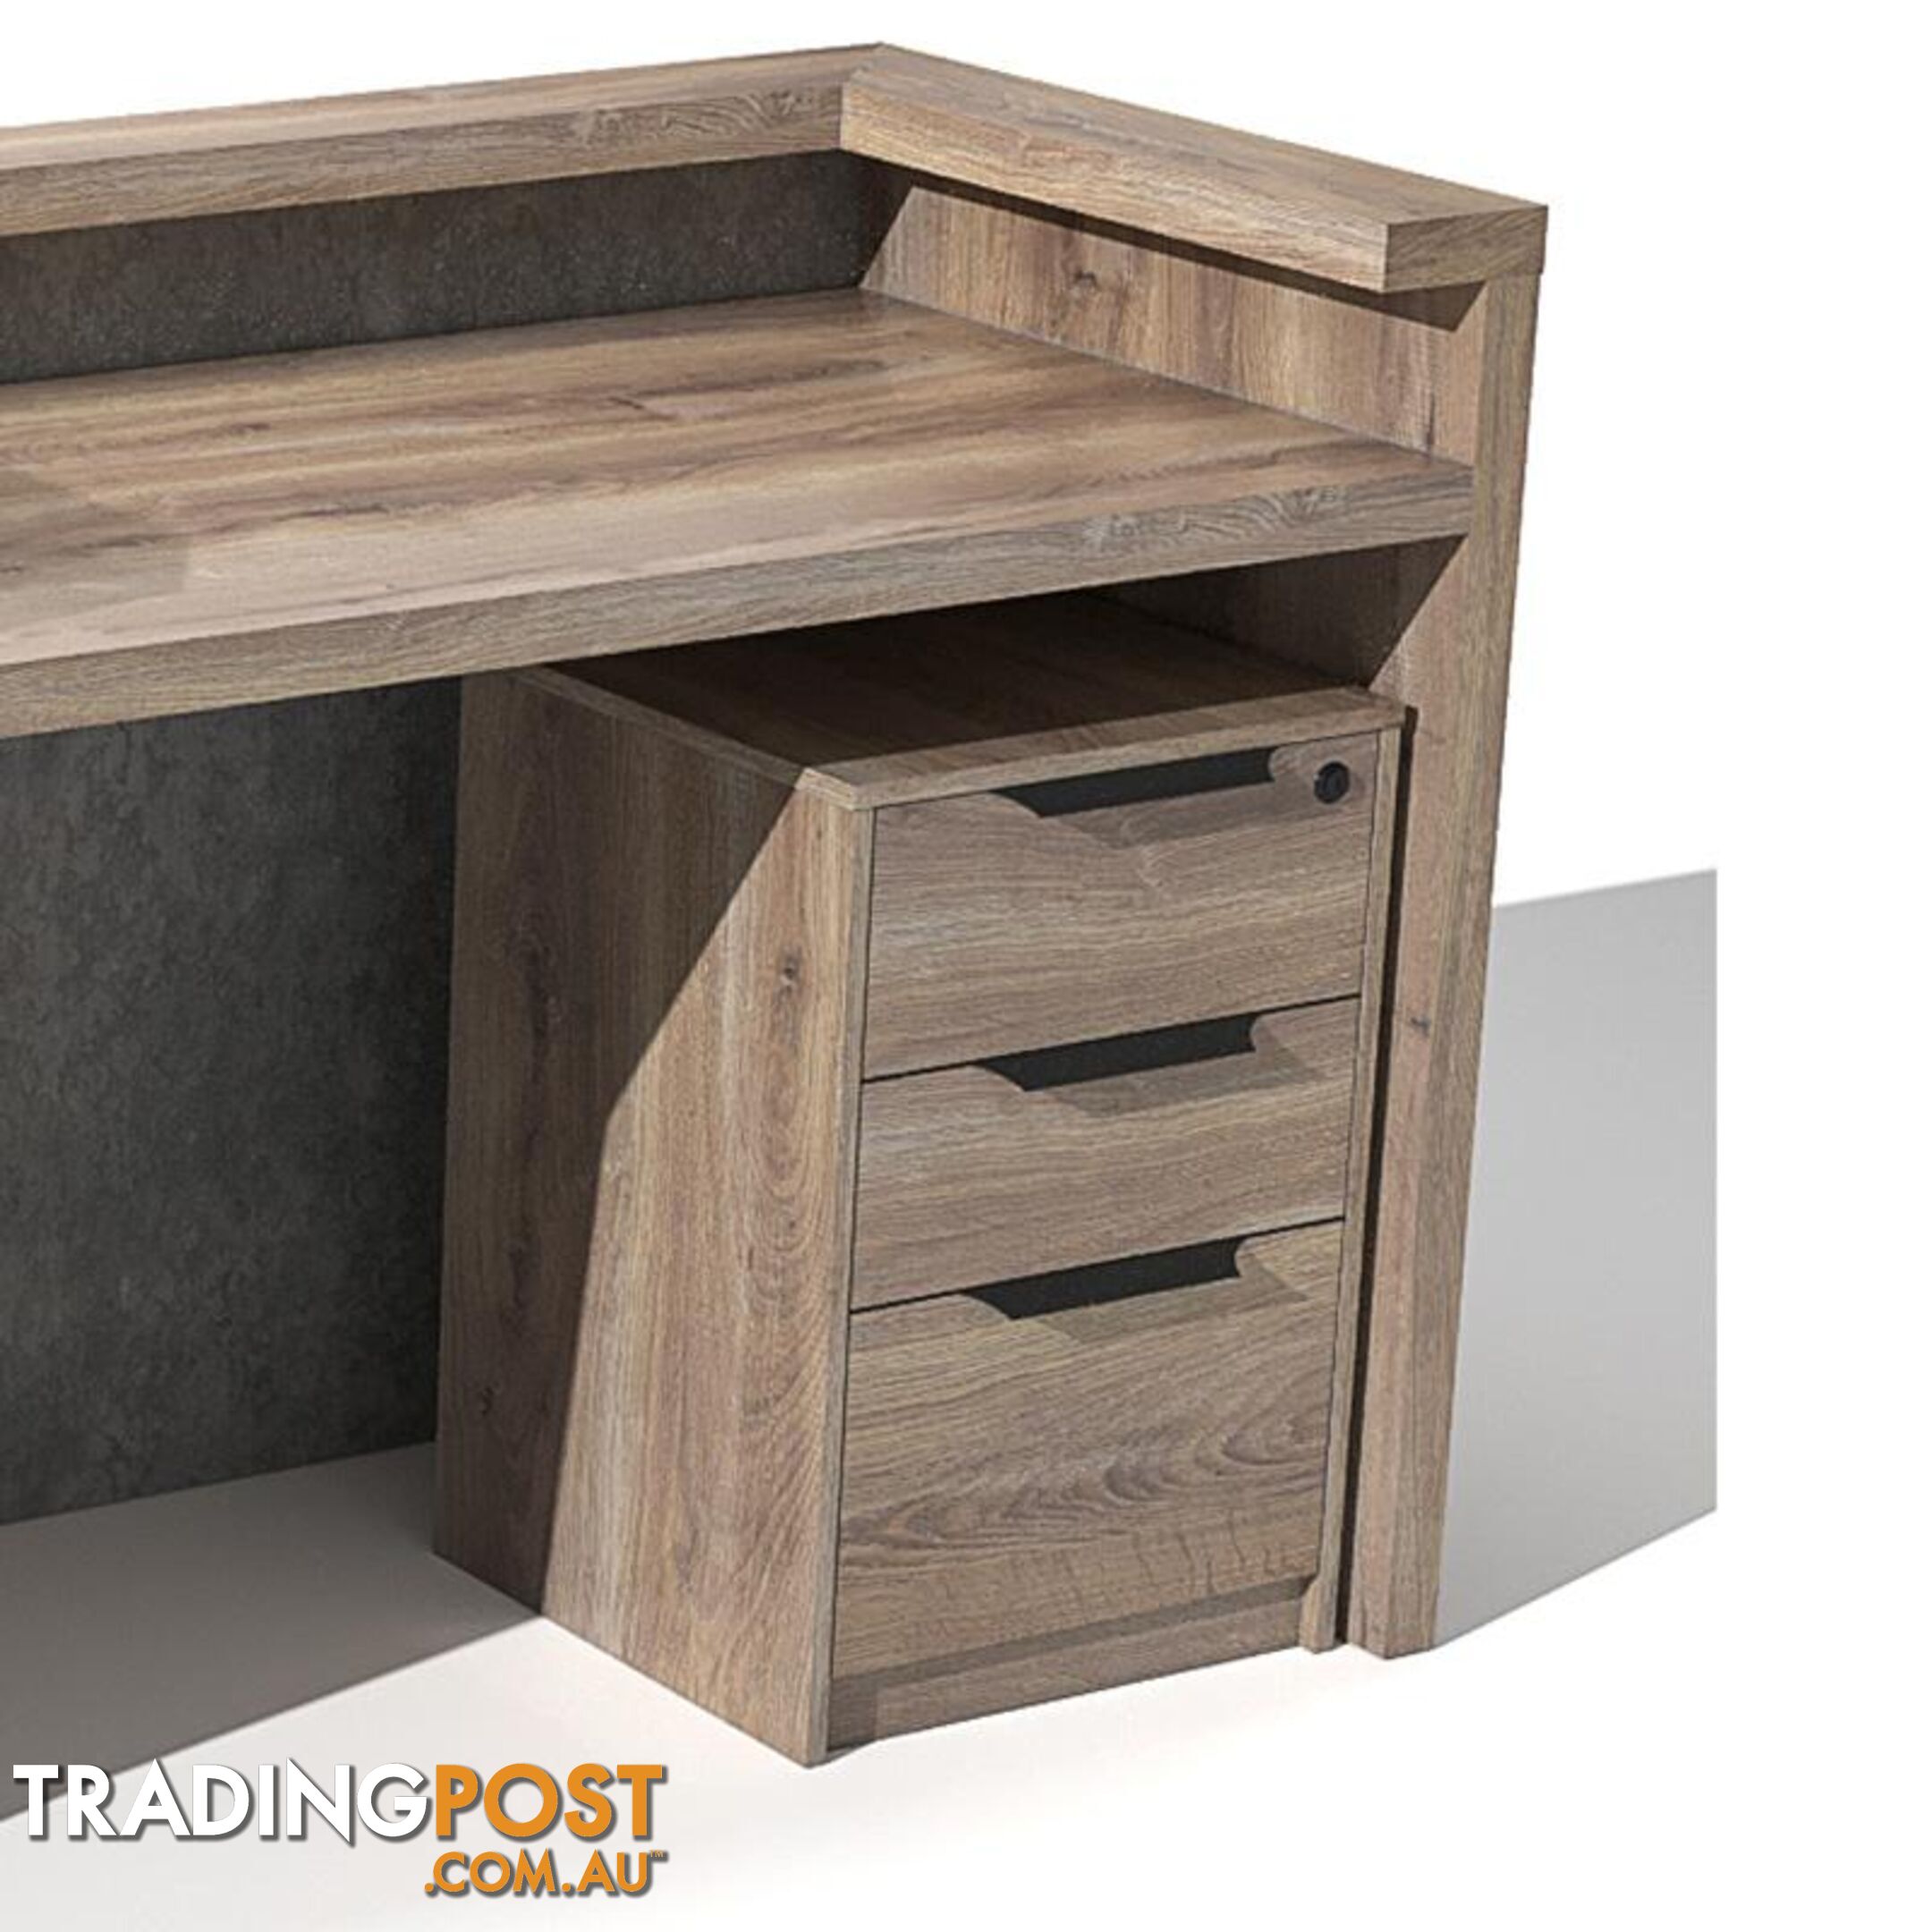 QUADE Reception Desk Left Panel 2.0M - Warm Oak & Concrete Color - WF-RT002-L-M - 9334719004853